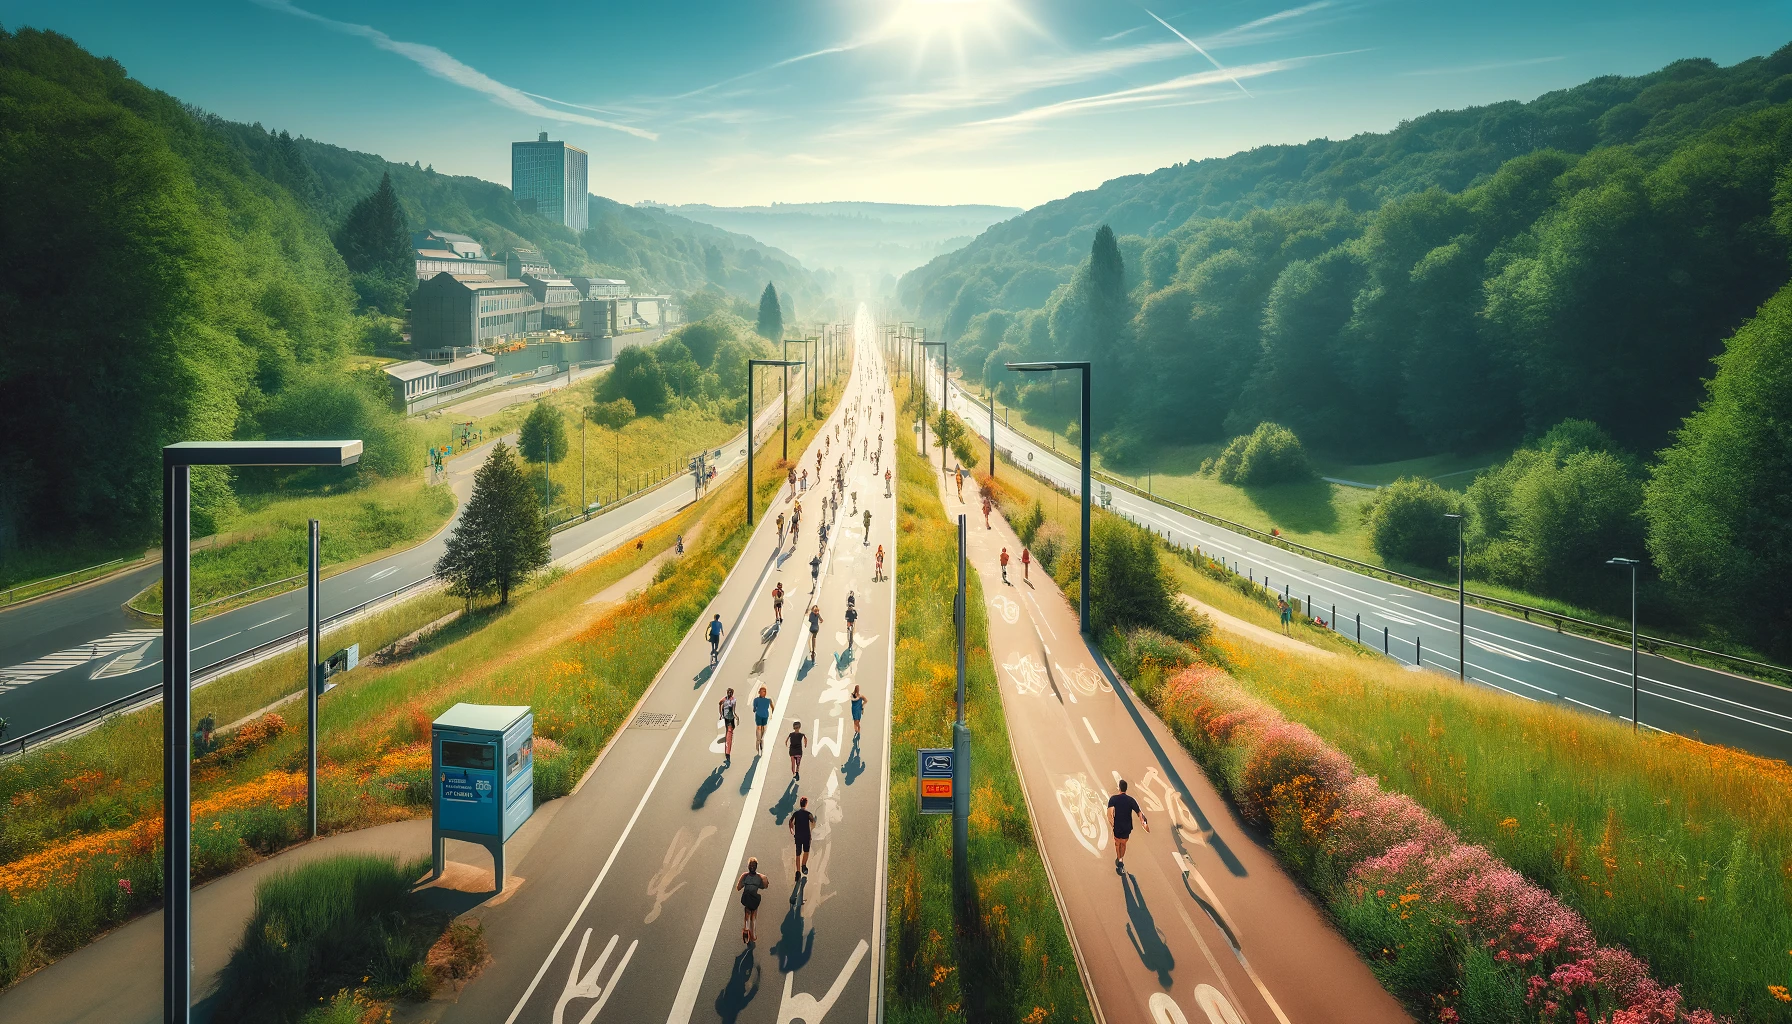 Hier ist das breite Panoramabild der Nordbahntrasse in Wuppertal, das den autofreien Jogging- und Radweg an einem sonnigen Tag zeigt. Das Bild betont die Freiheit und Sicherheit der Umgebung, ideal für sportliche Aktivitäten.